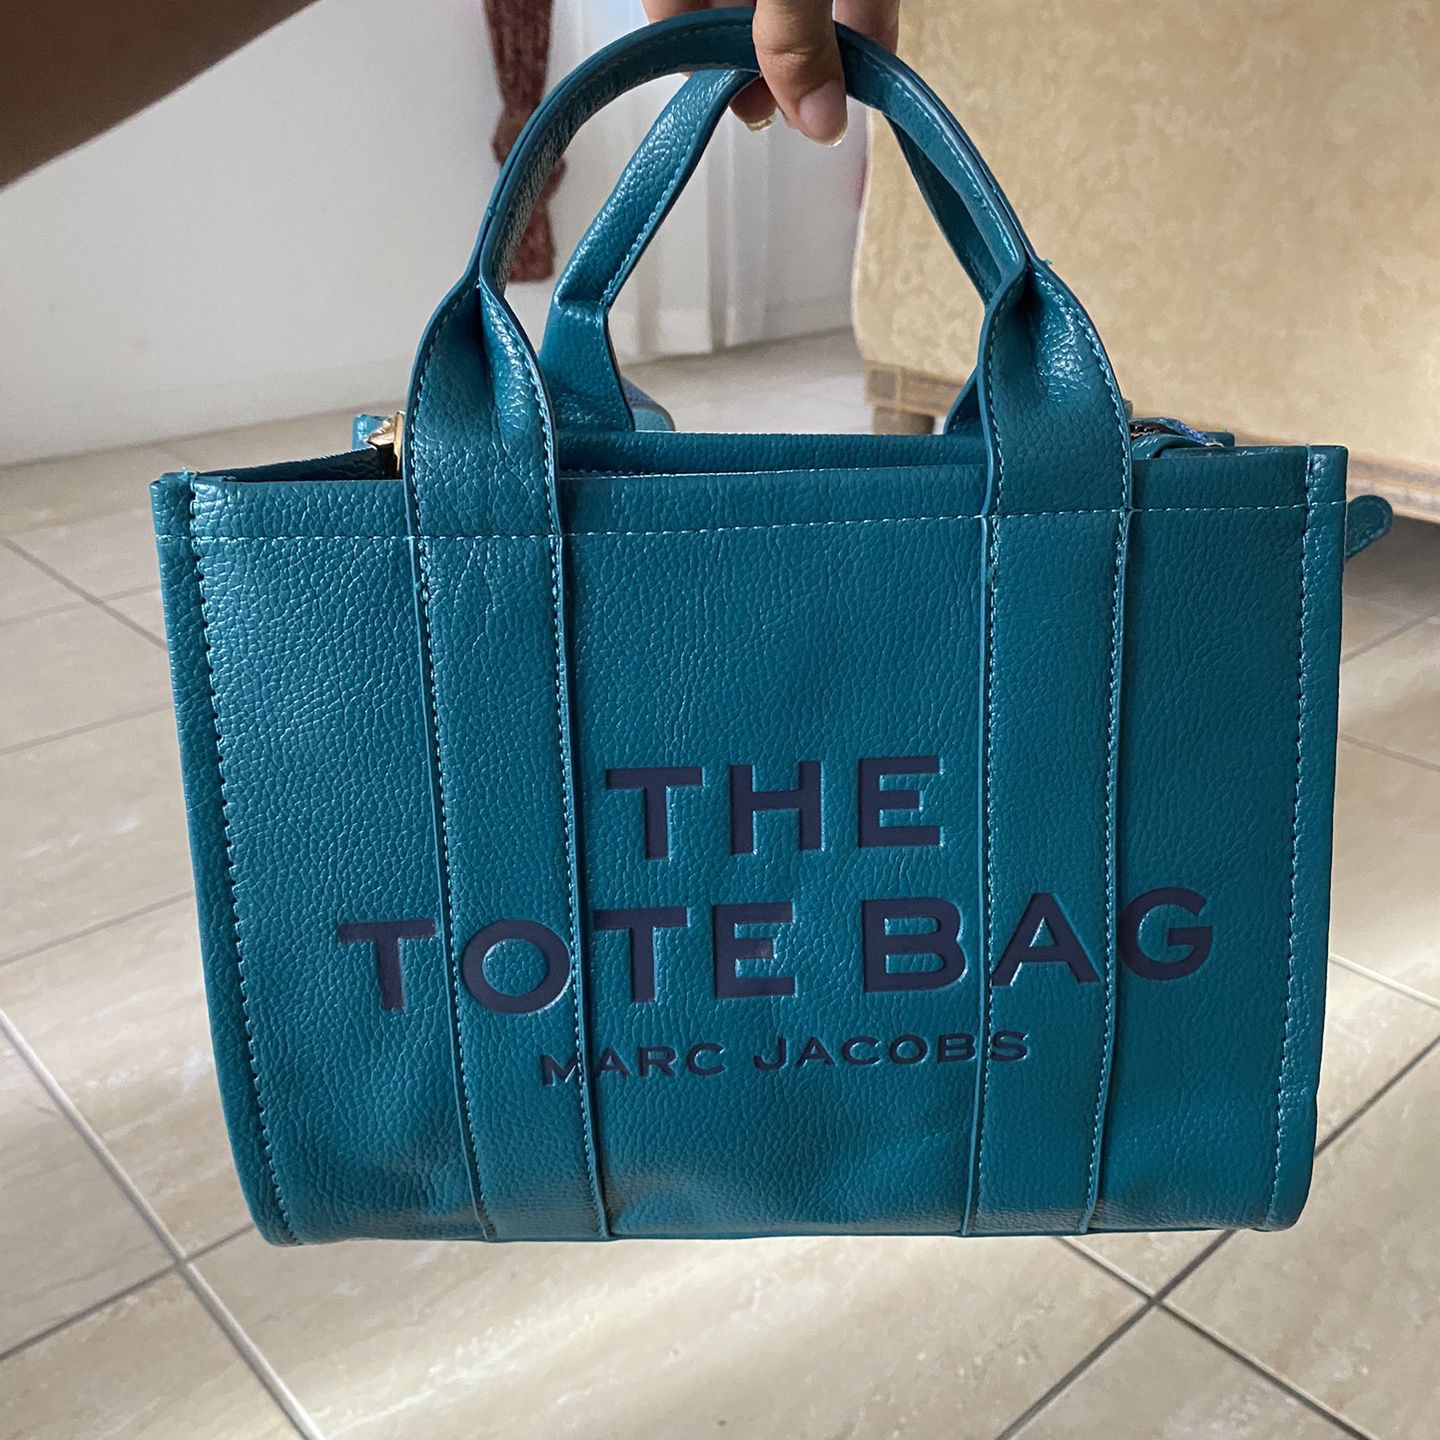 Coach Tote Bag for Sale in Miami, FL - OfferUp